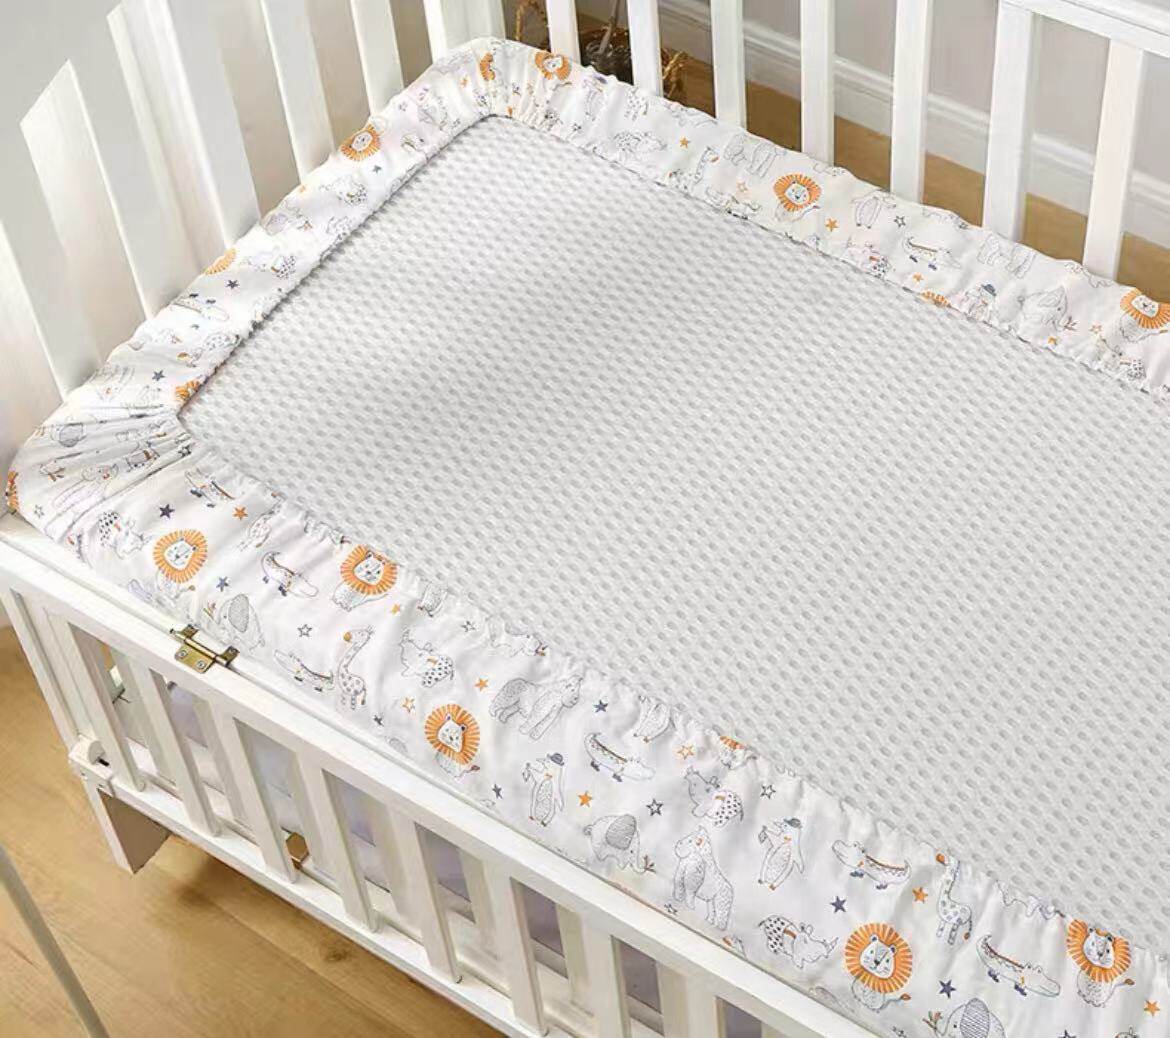 Custom size crib sheets,high quality crib sheets